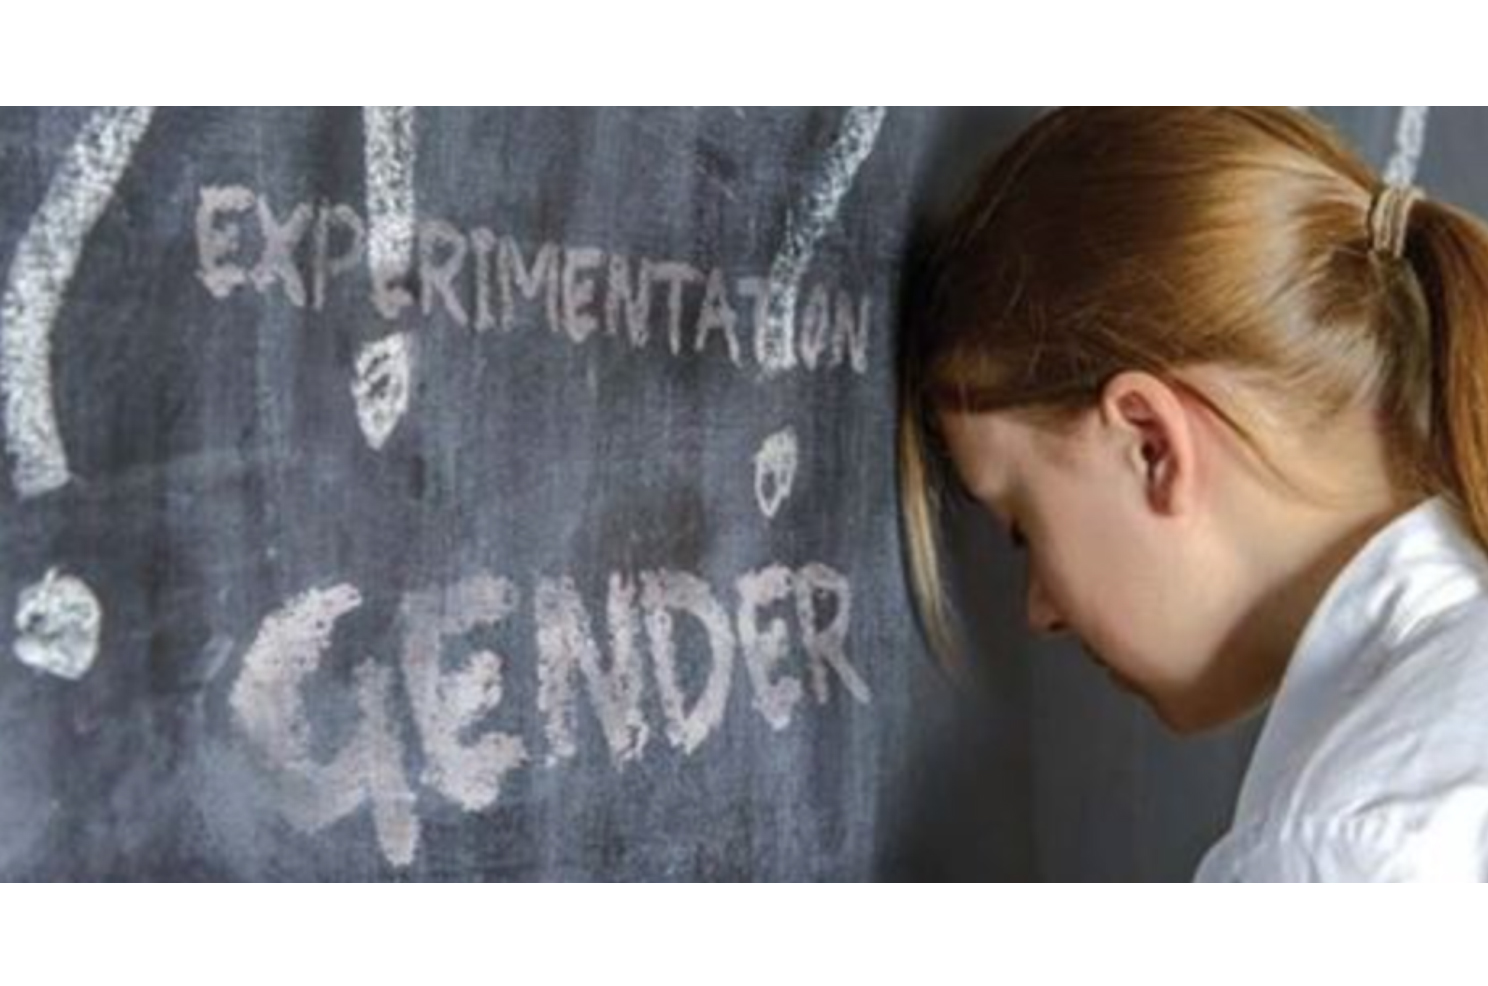 La piattaforma WeSchool viola il primato educativo delle famiglie: proposto ai docenti un questionario gender da somministrare agli alunni 1